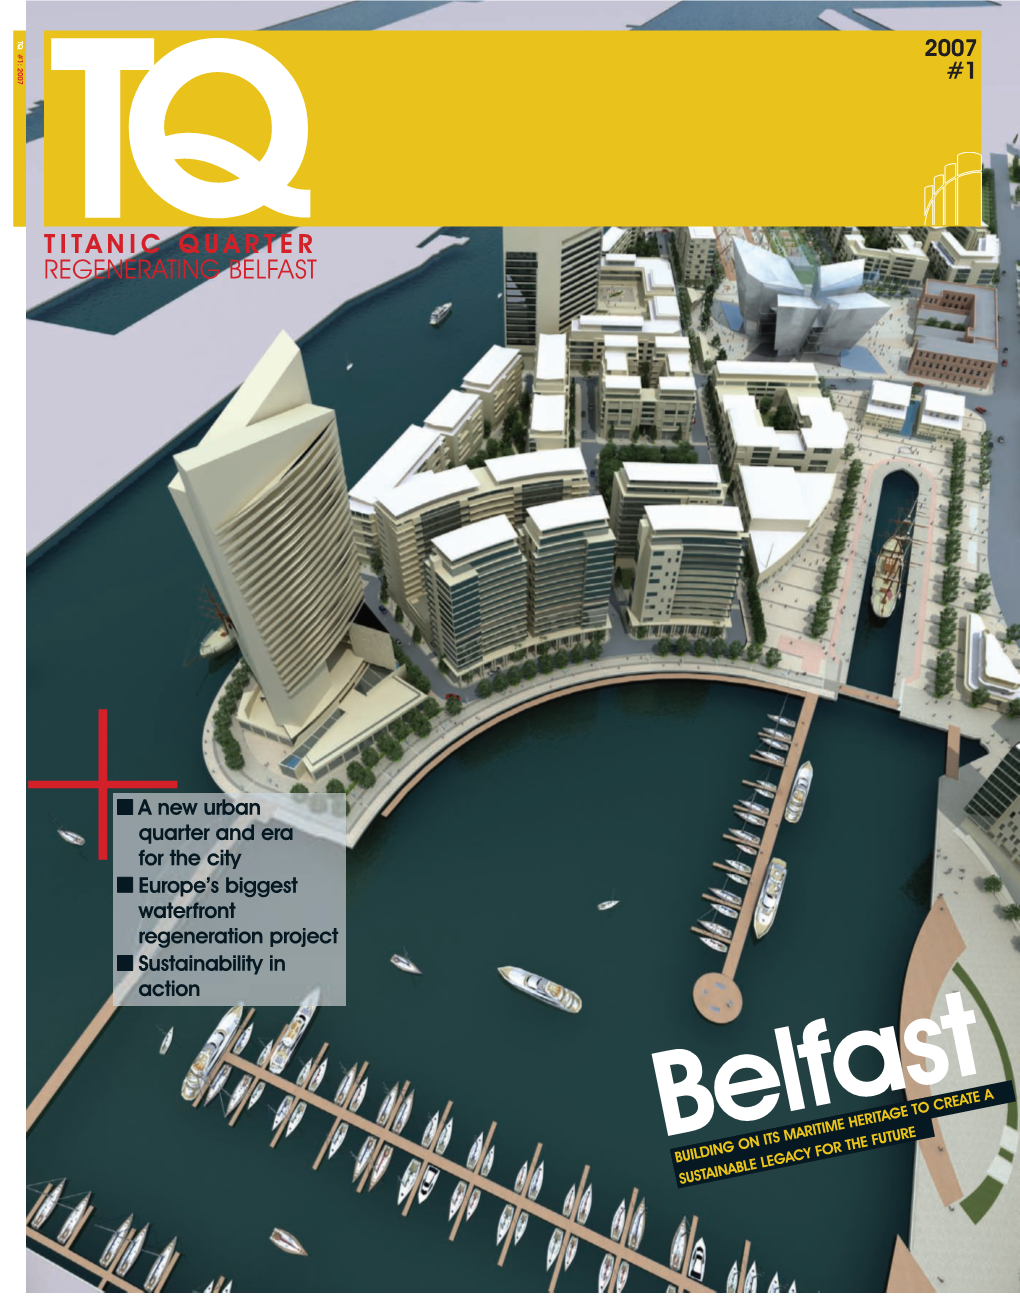 Titanic Quarter Regenerating Belfast